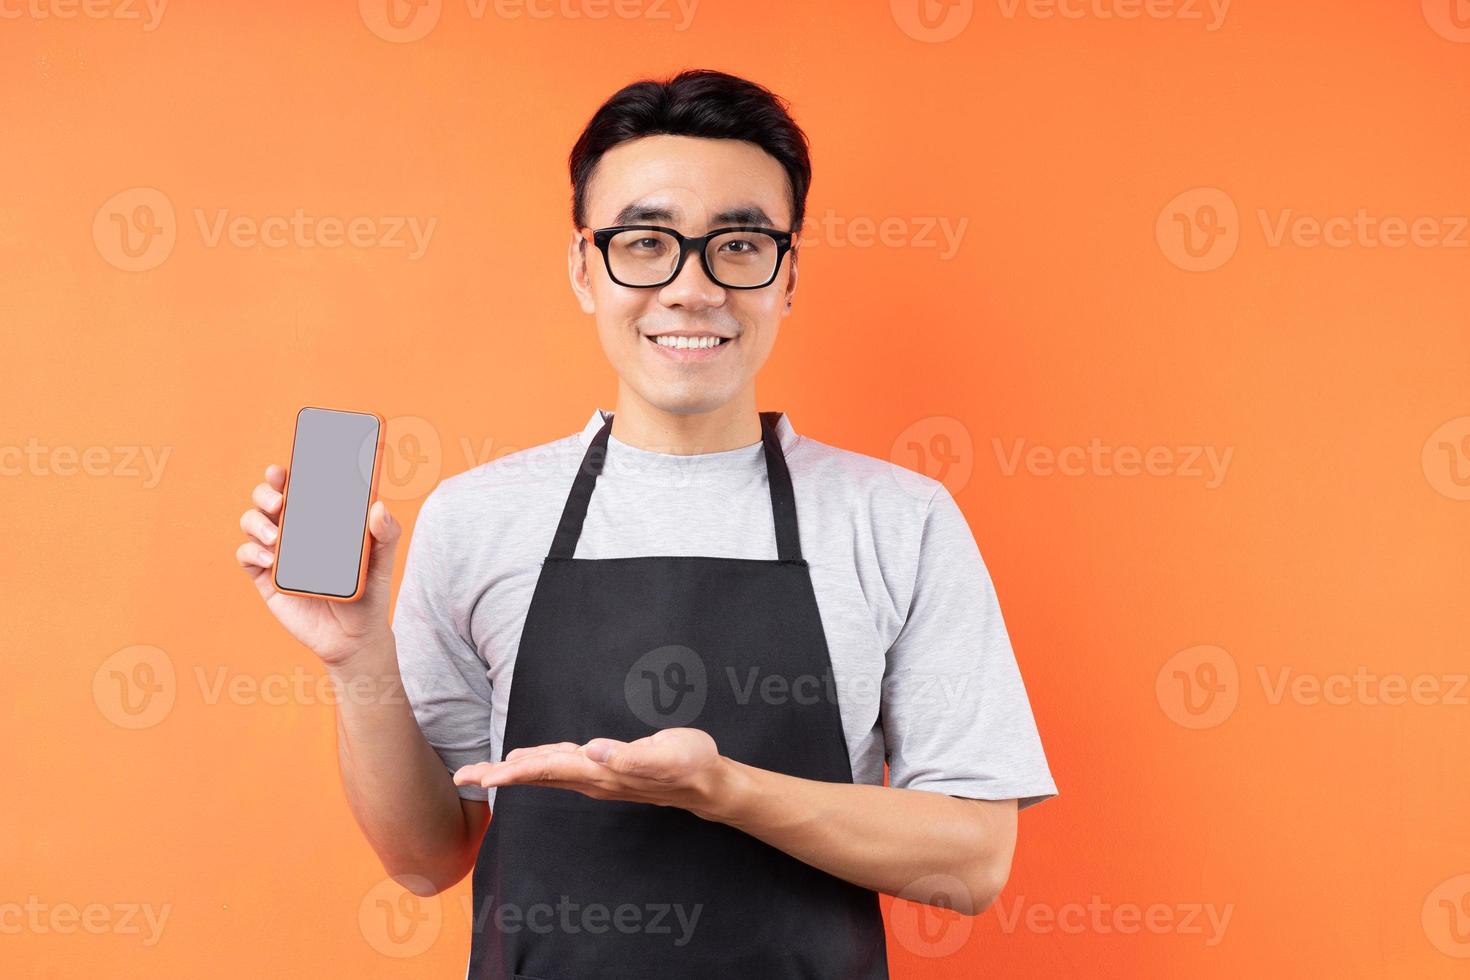 porträtt av asiatisk manlig servitör som poserar på orange bakgrund foto